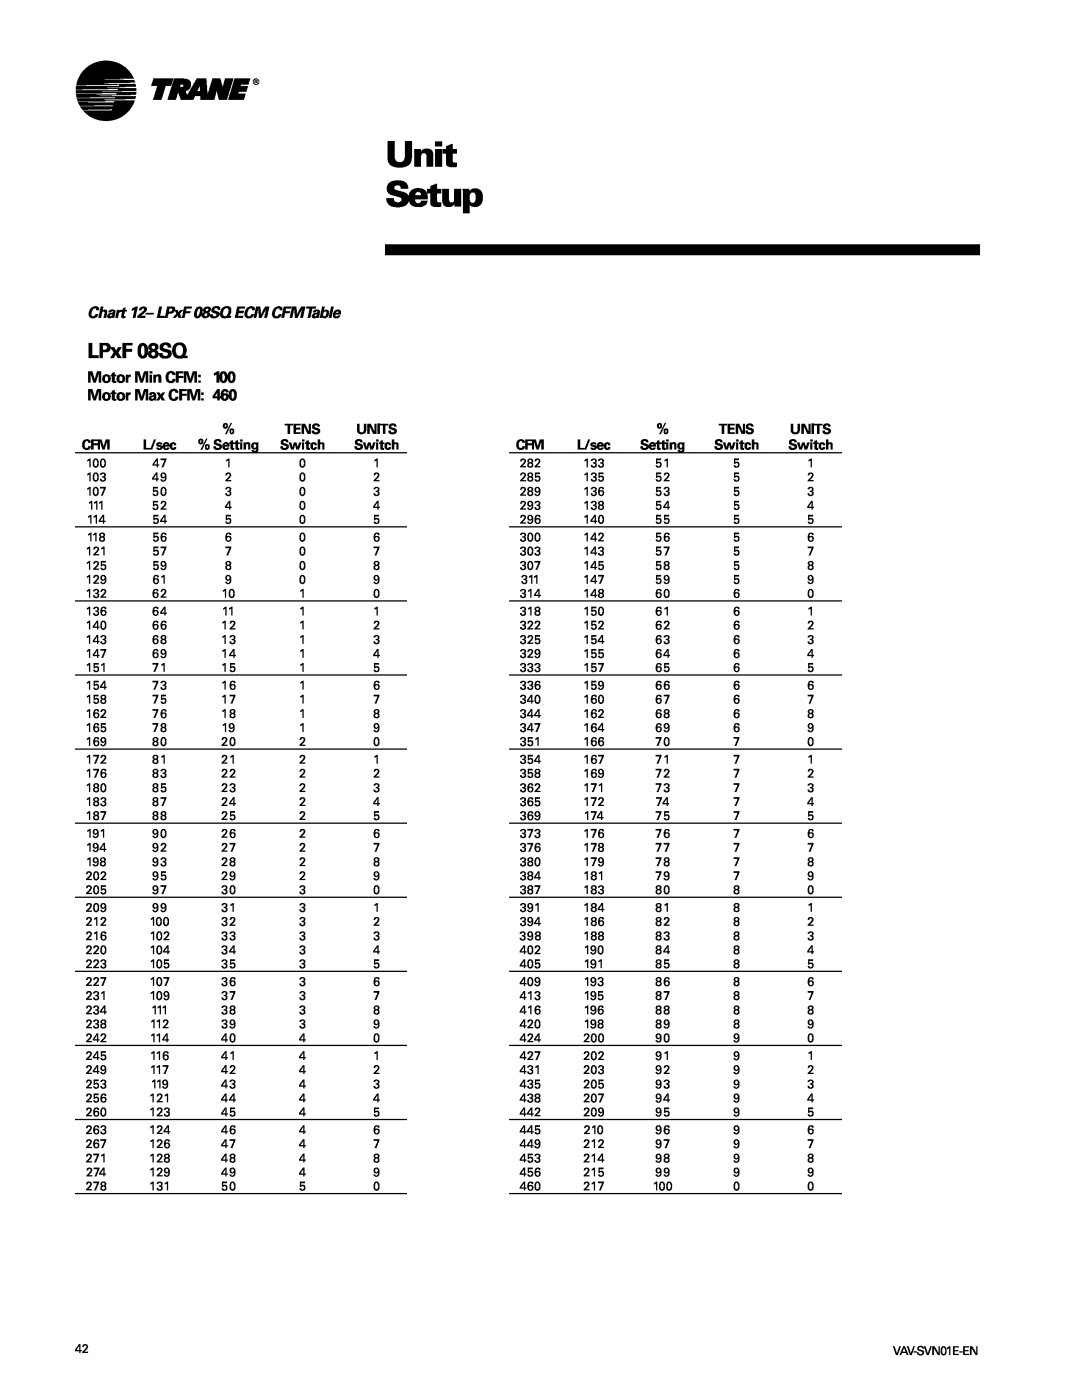 Trane VAV-SVN01E-EN, Trane manual Unit Setup, Chart 12- LPxF 08SQ ECM CFMTable, Tens, Units, L/sec, Setting 